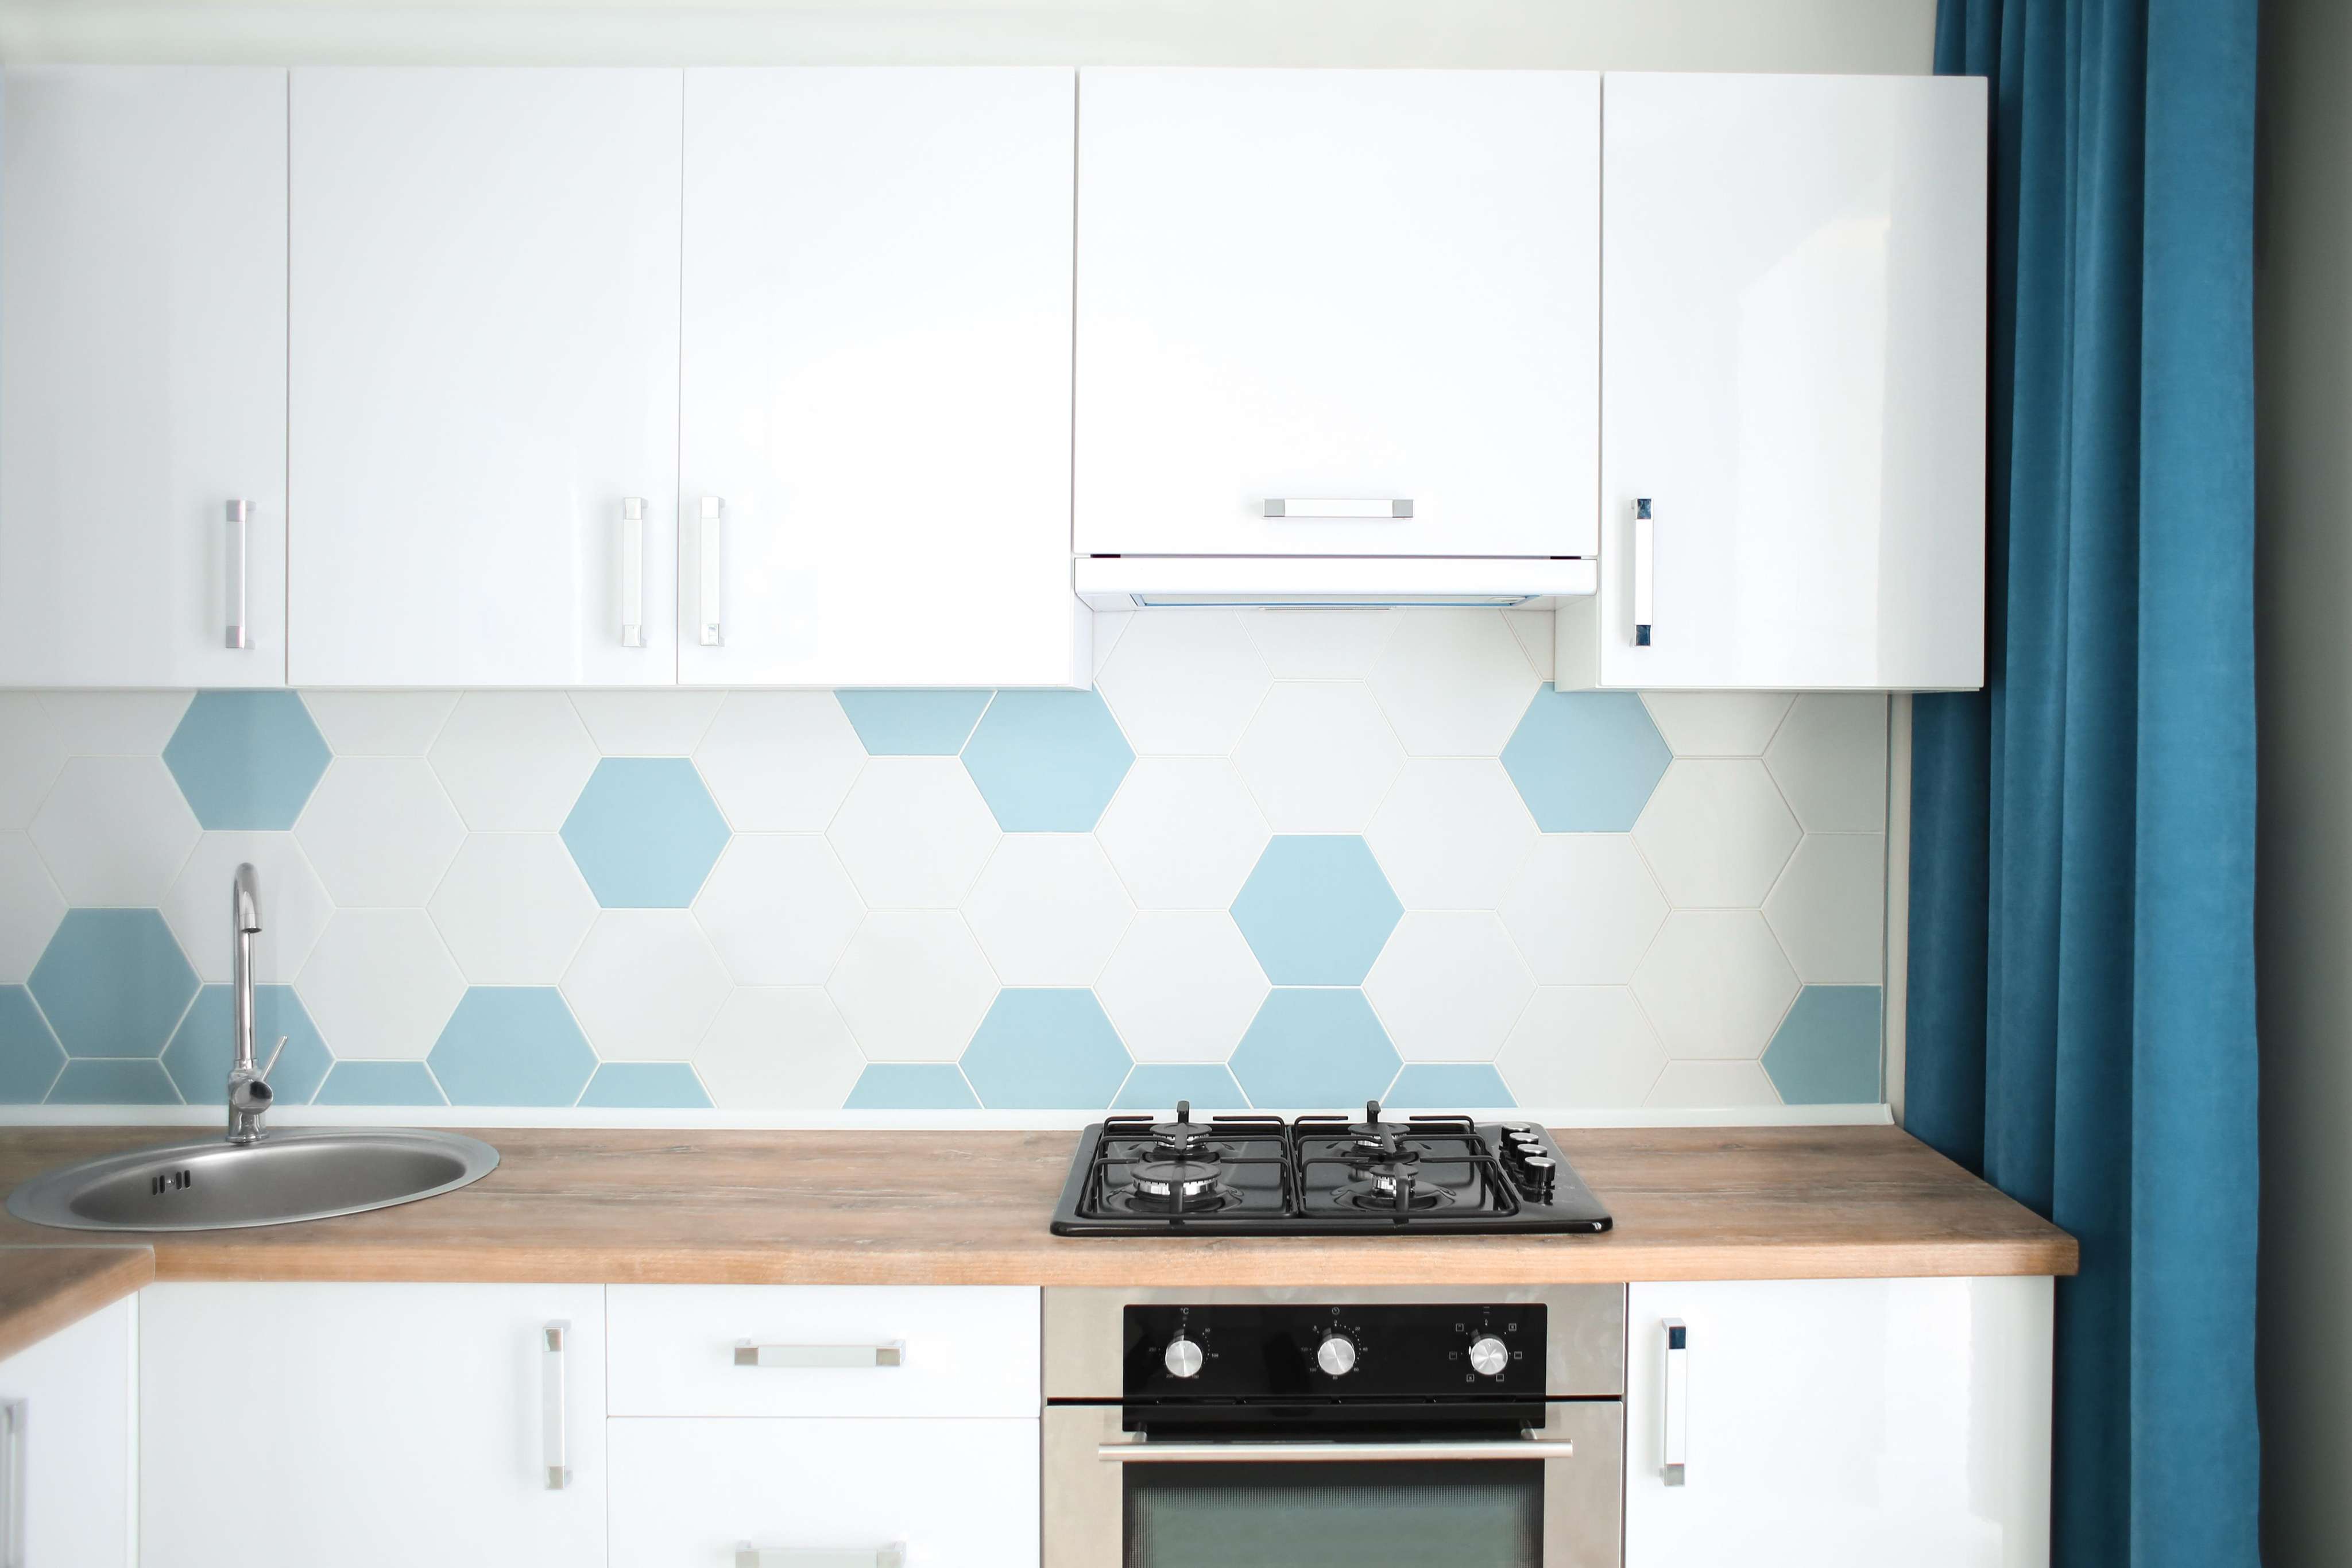 Hexagonal New Kitchen Wall Tiles